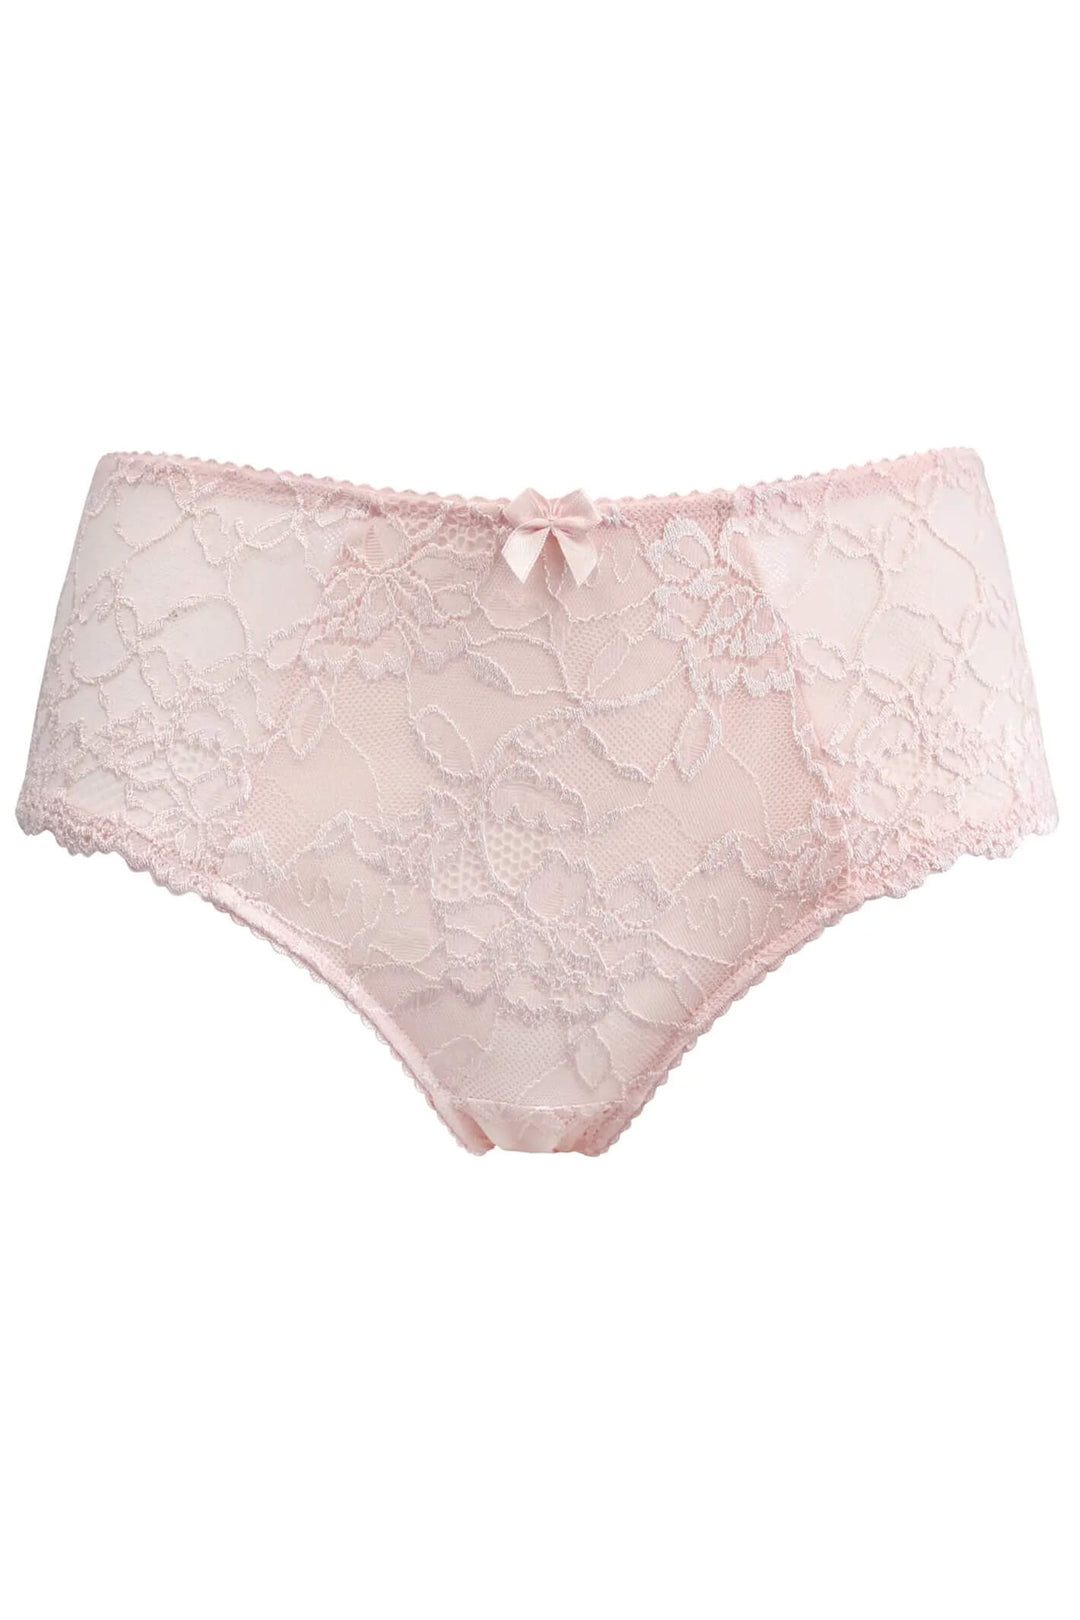 Charnos 116505 Rosalind Soft Pink Brief - Shirley Allum Boutique